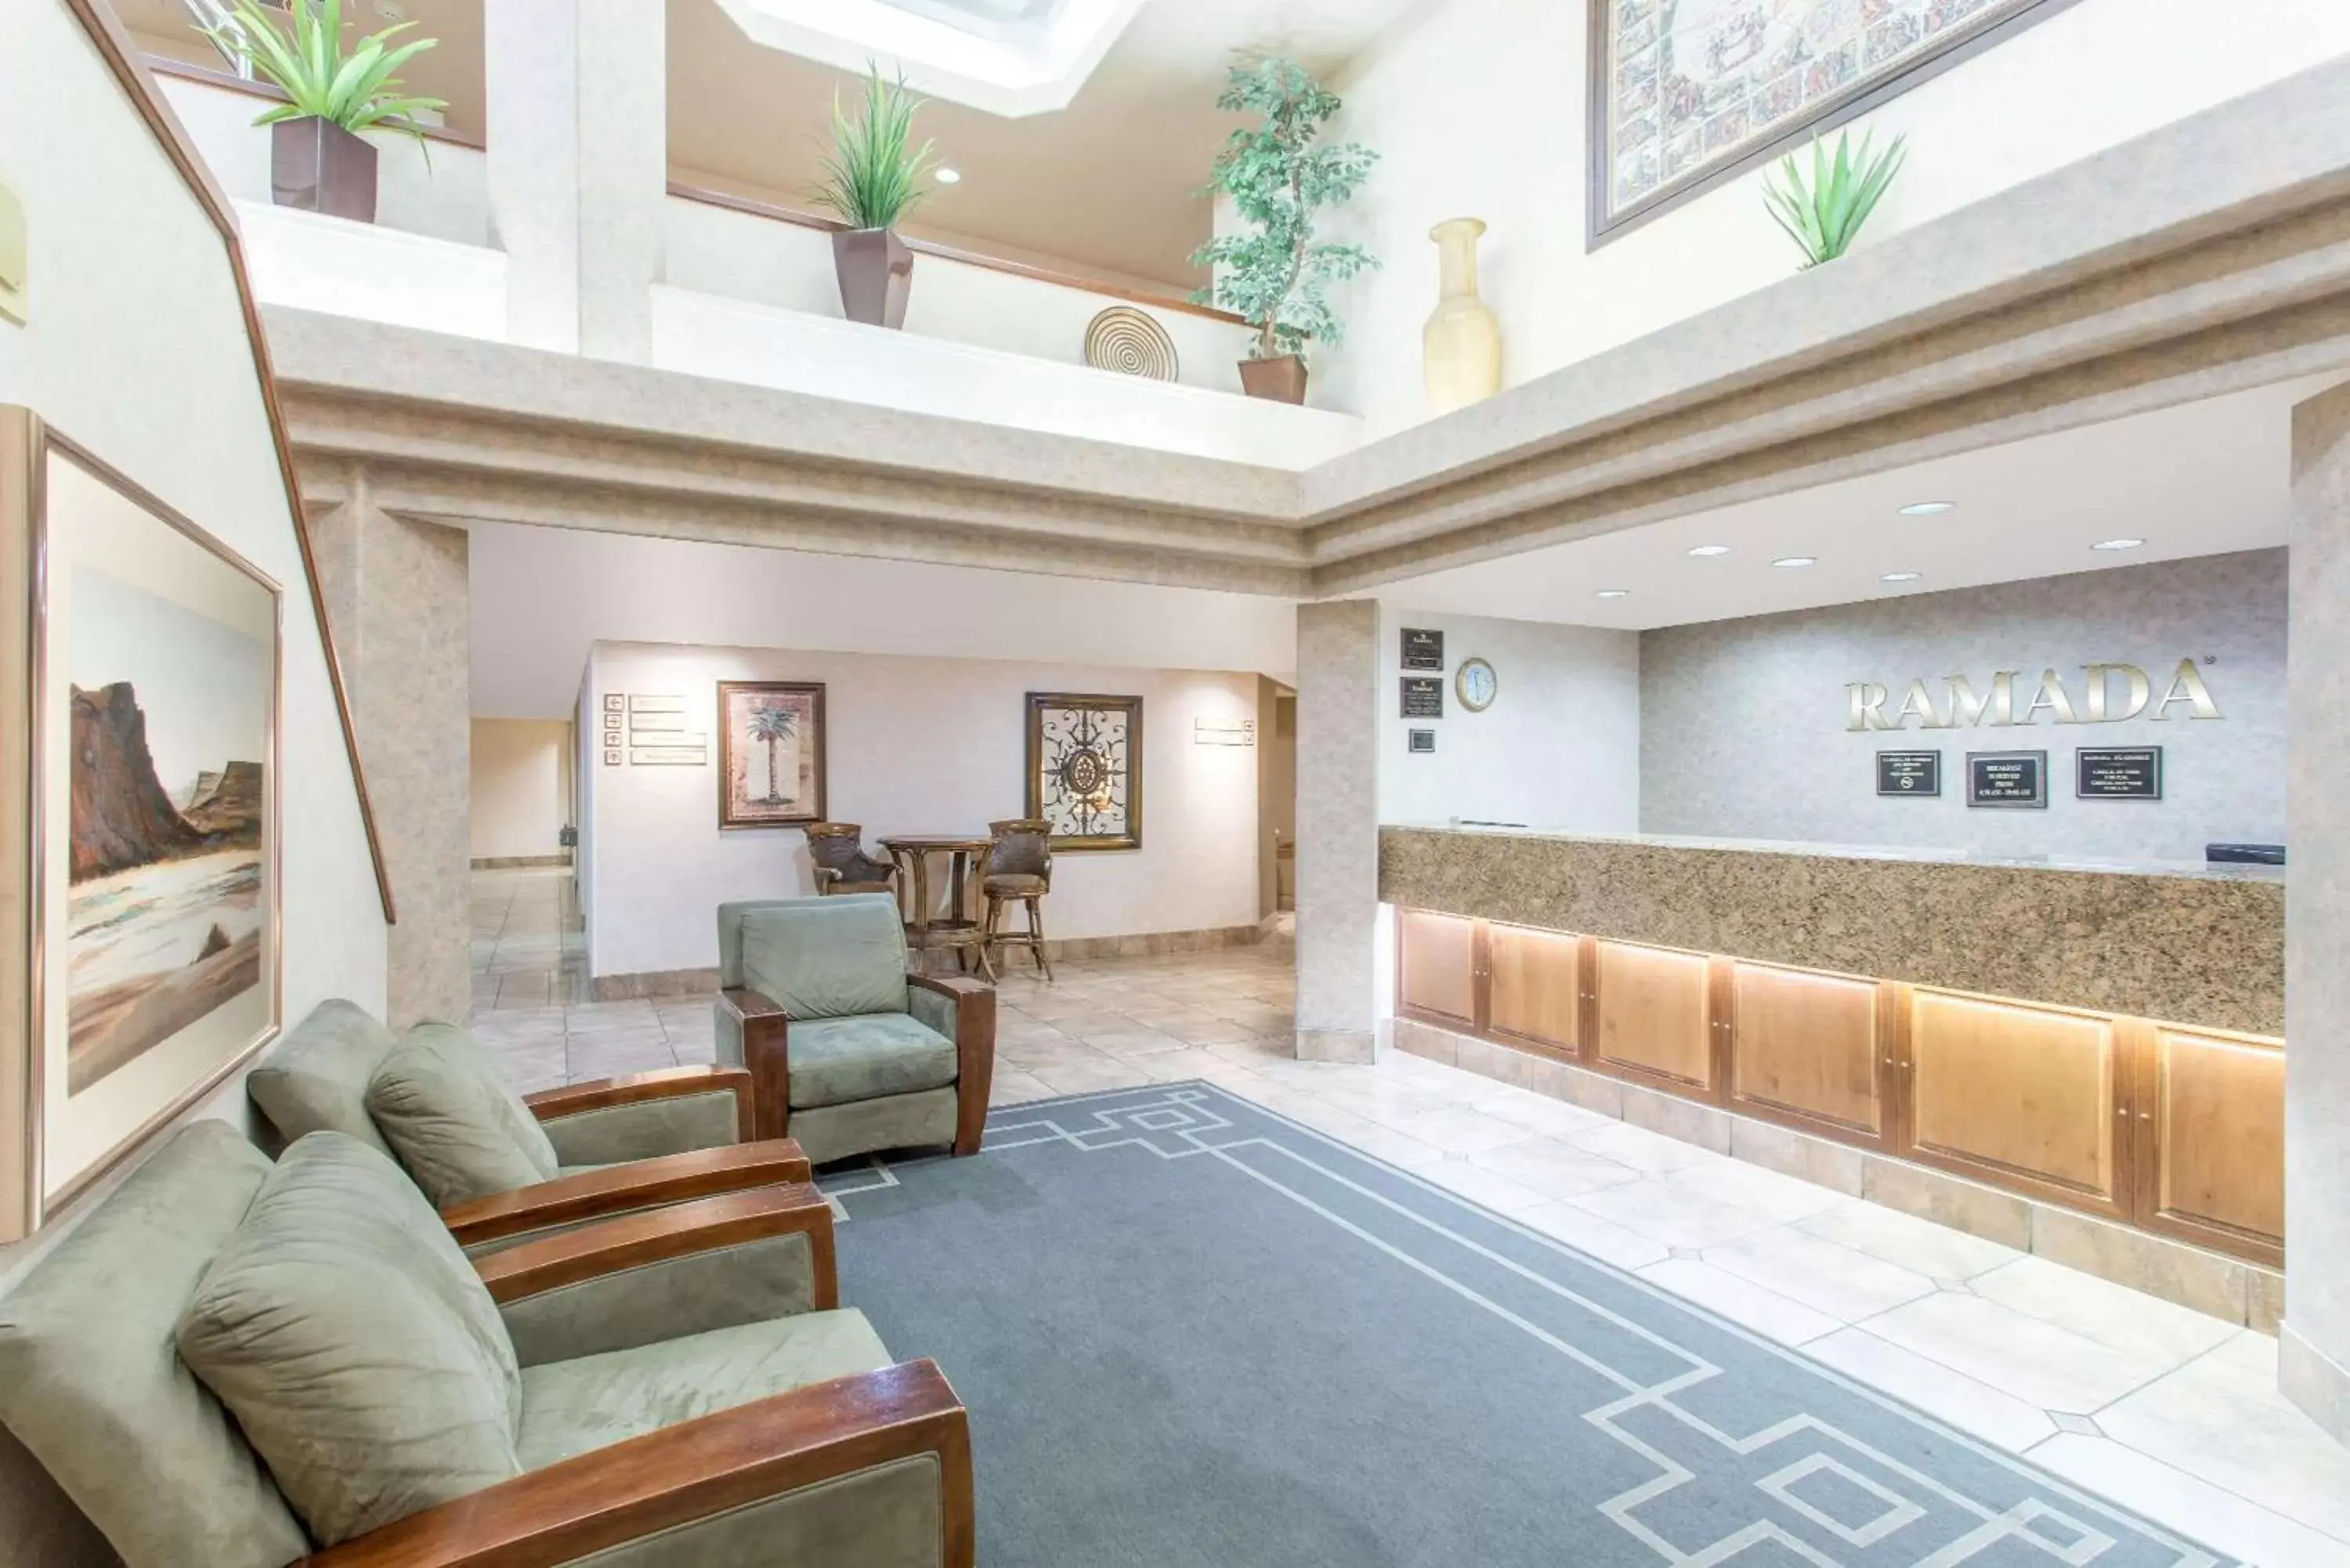 Lobby or reception, Lobby/Reception in Ramada by Wyndham St George